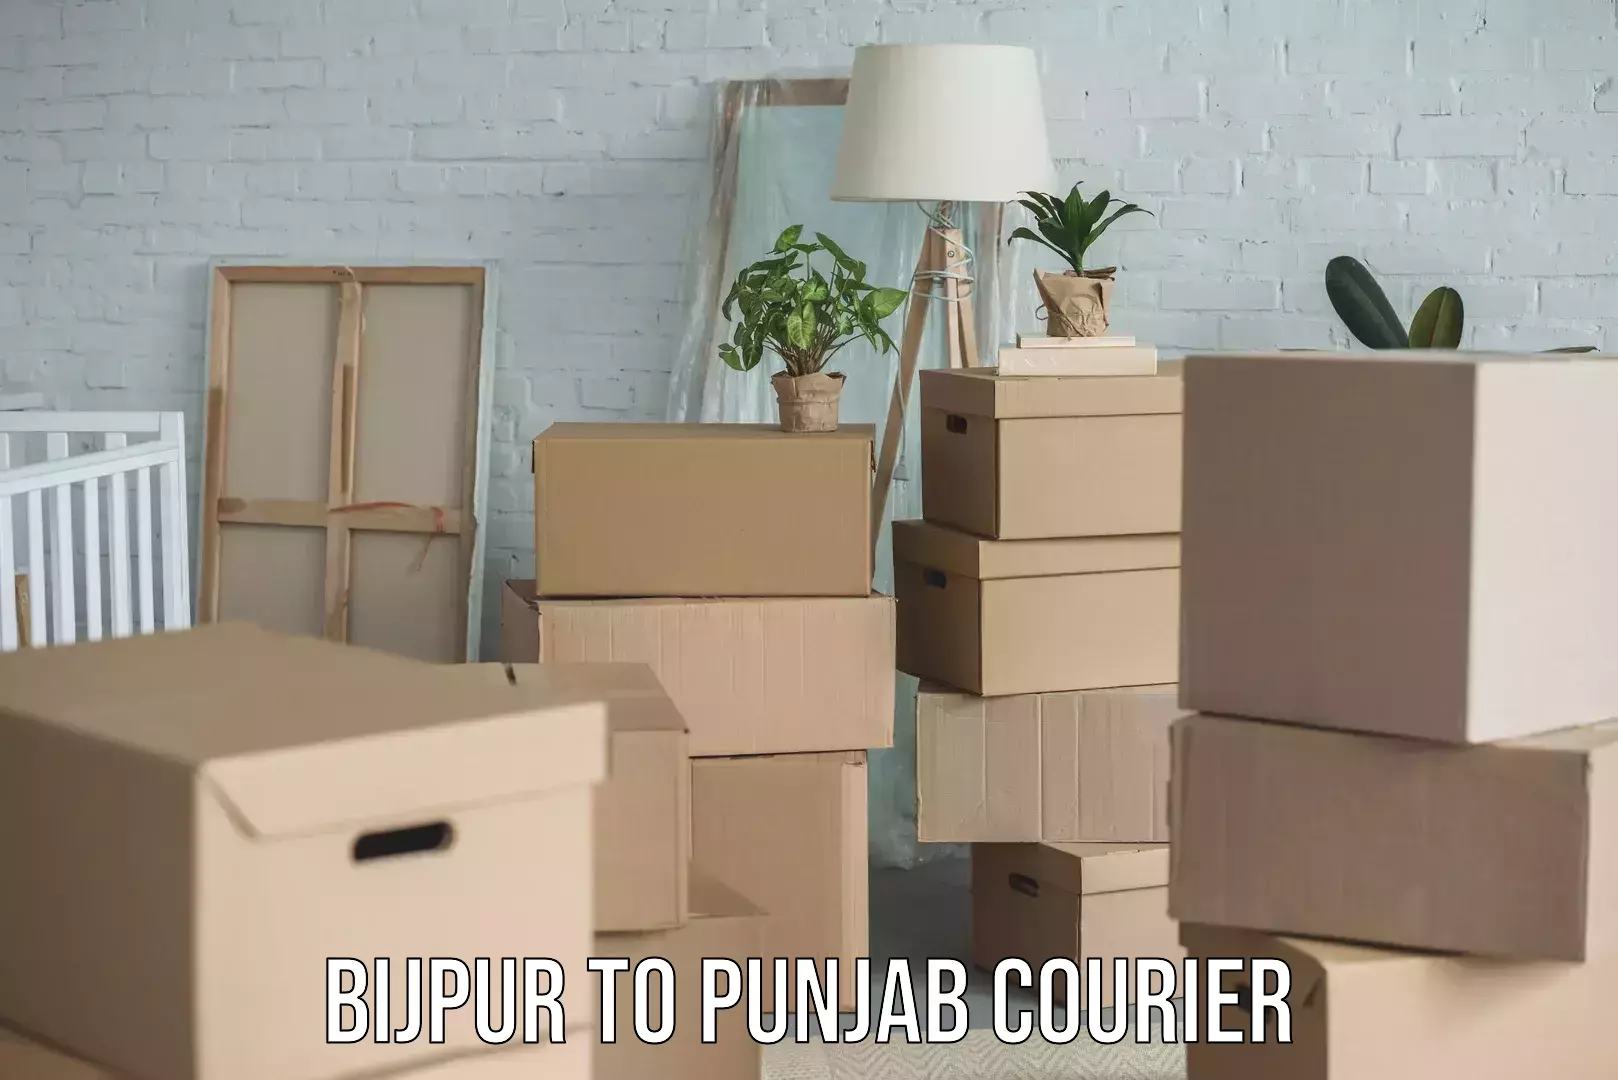 Package tracking Bijpur to Punjab